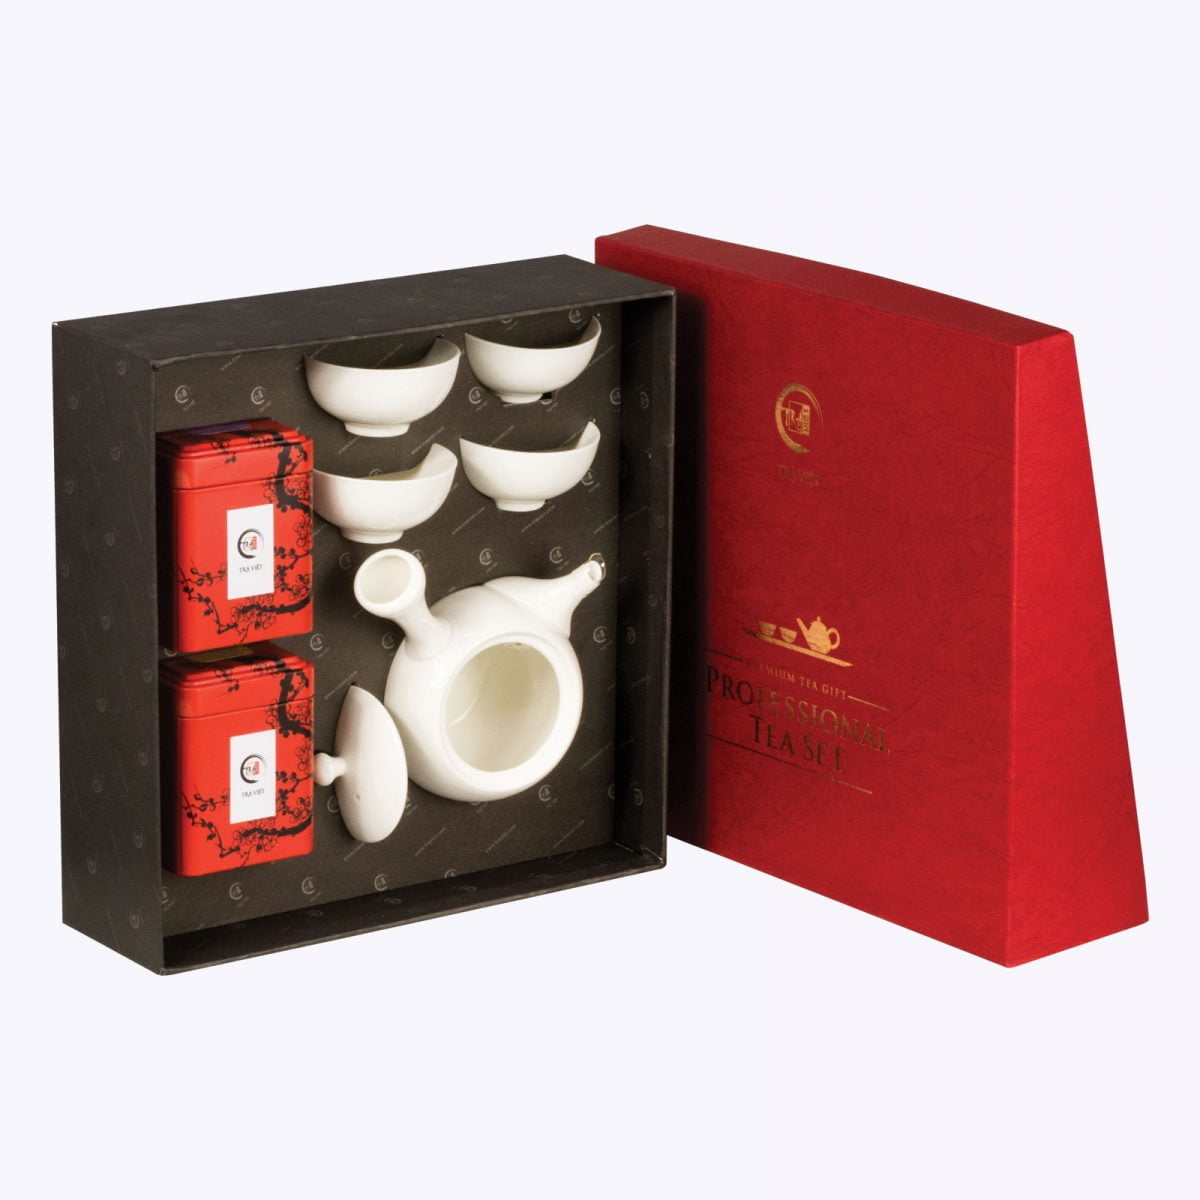 Standard porcelain tea sets plus